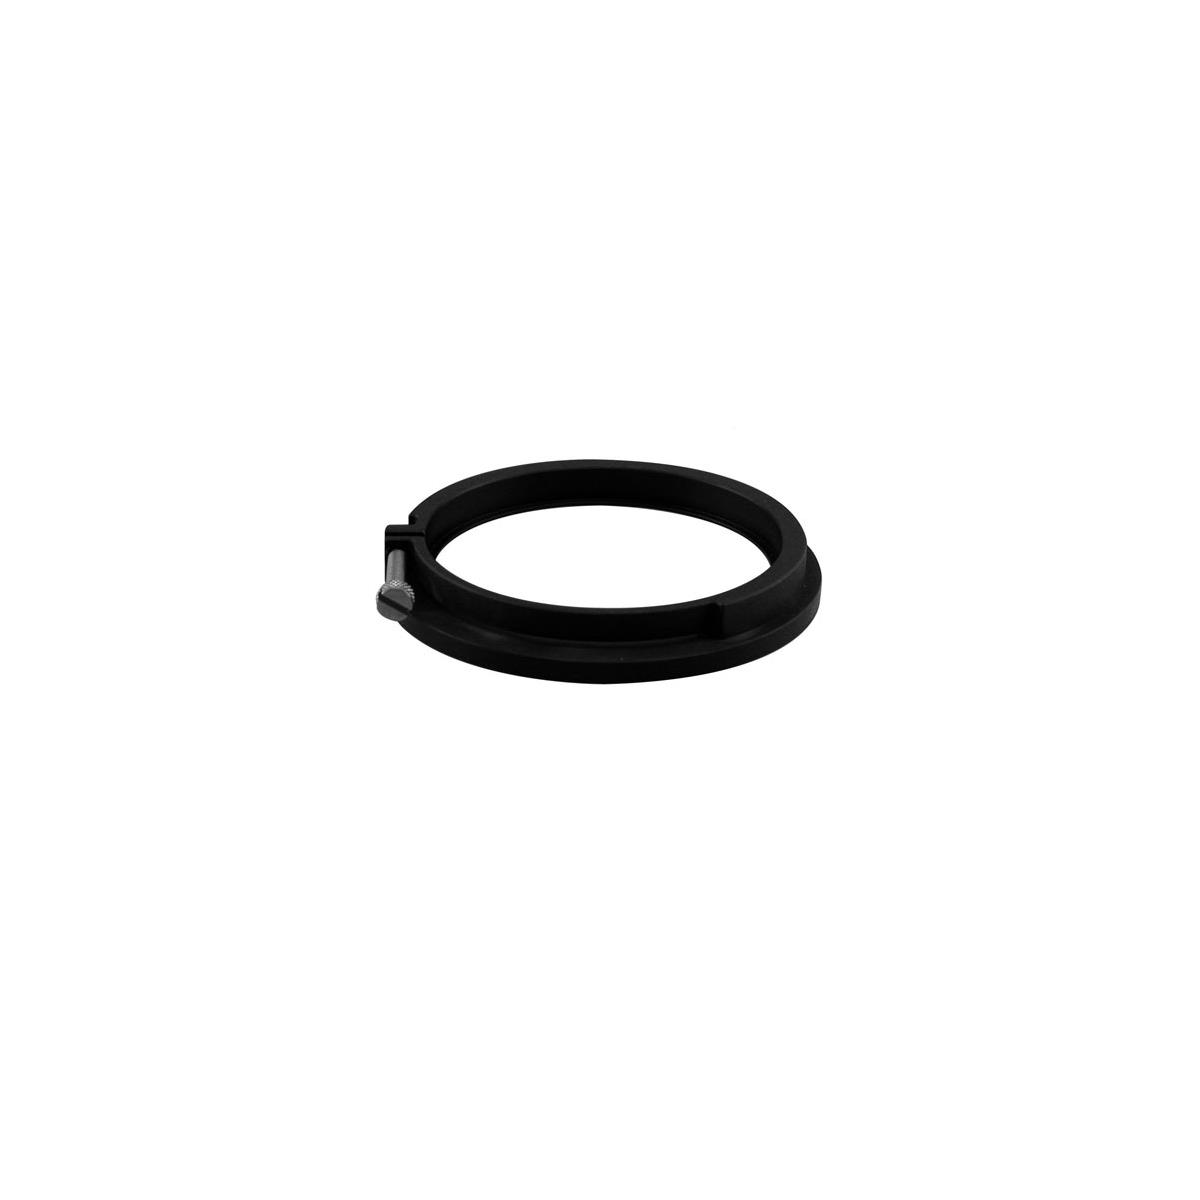 Image of Century Optics 80mm Slip-on Adapter Ring for Super Fisheye Adaptor MK II